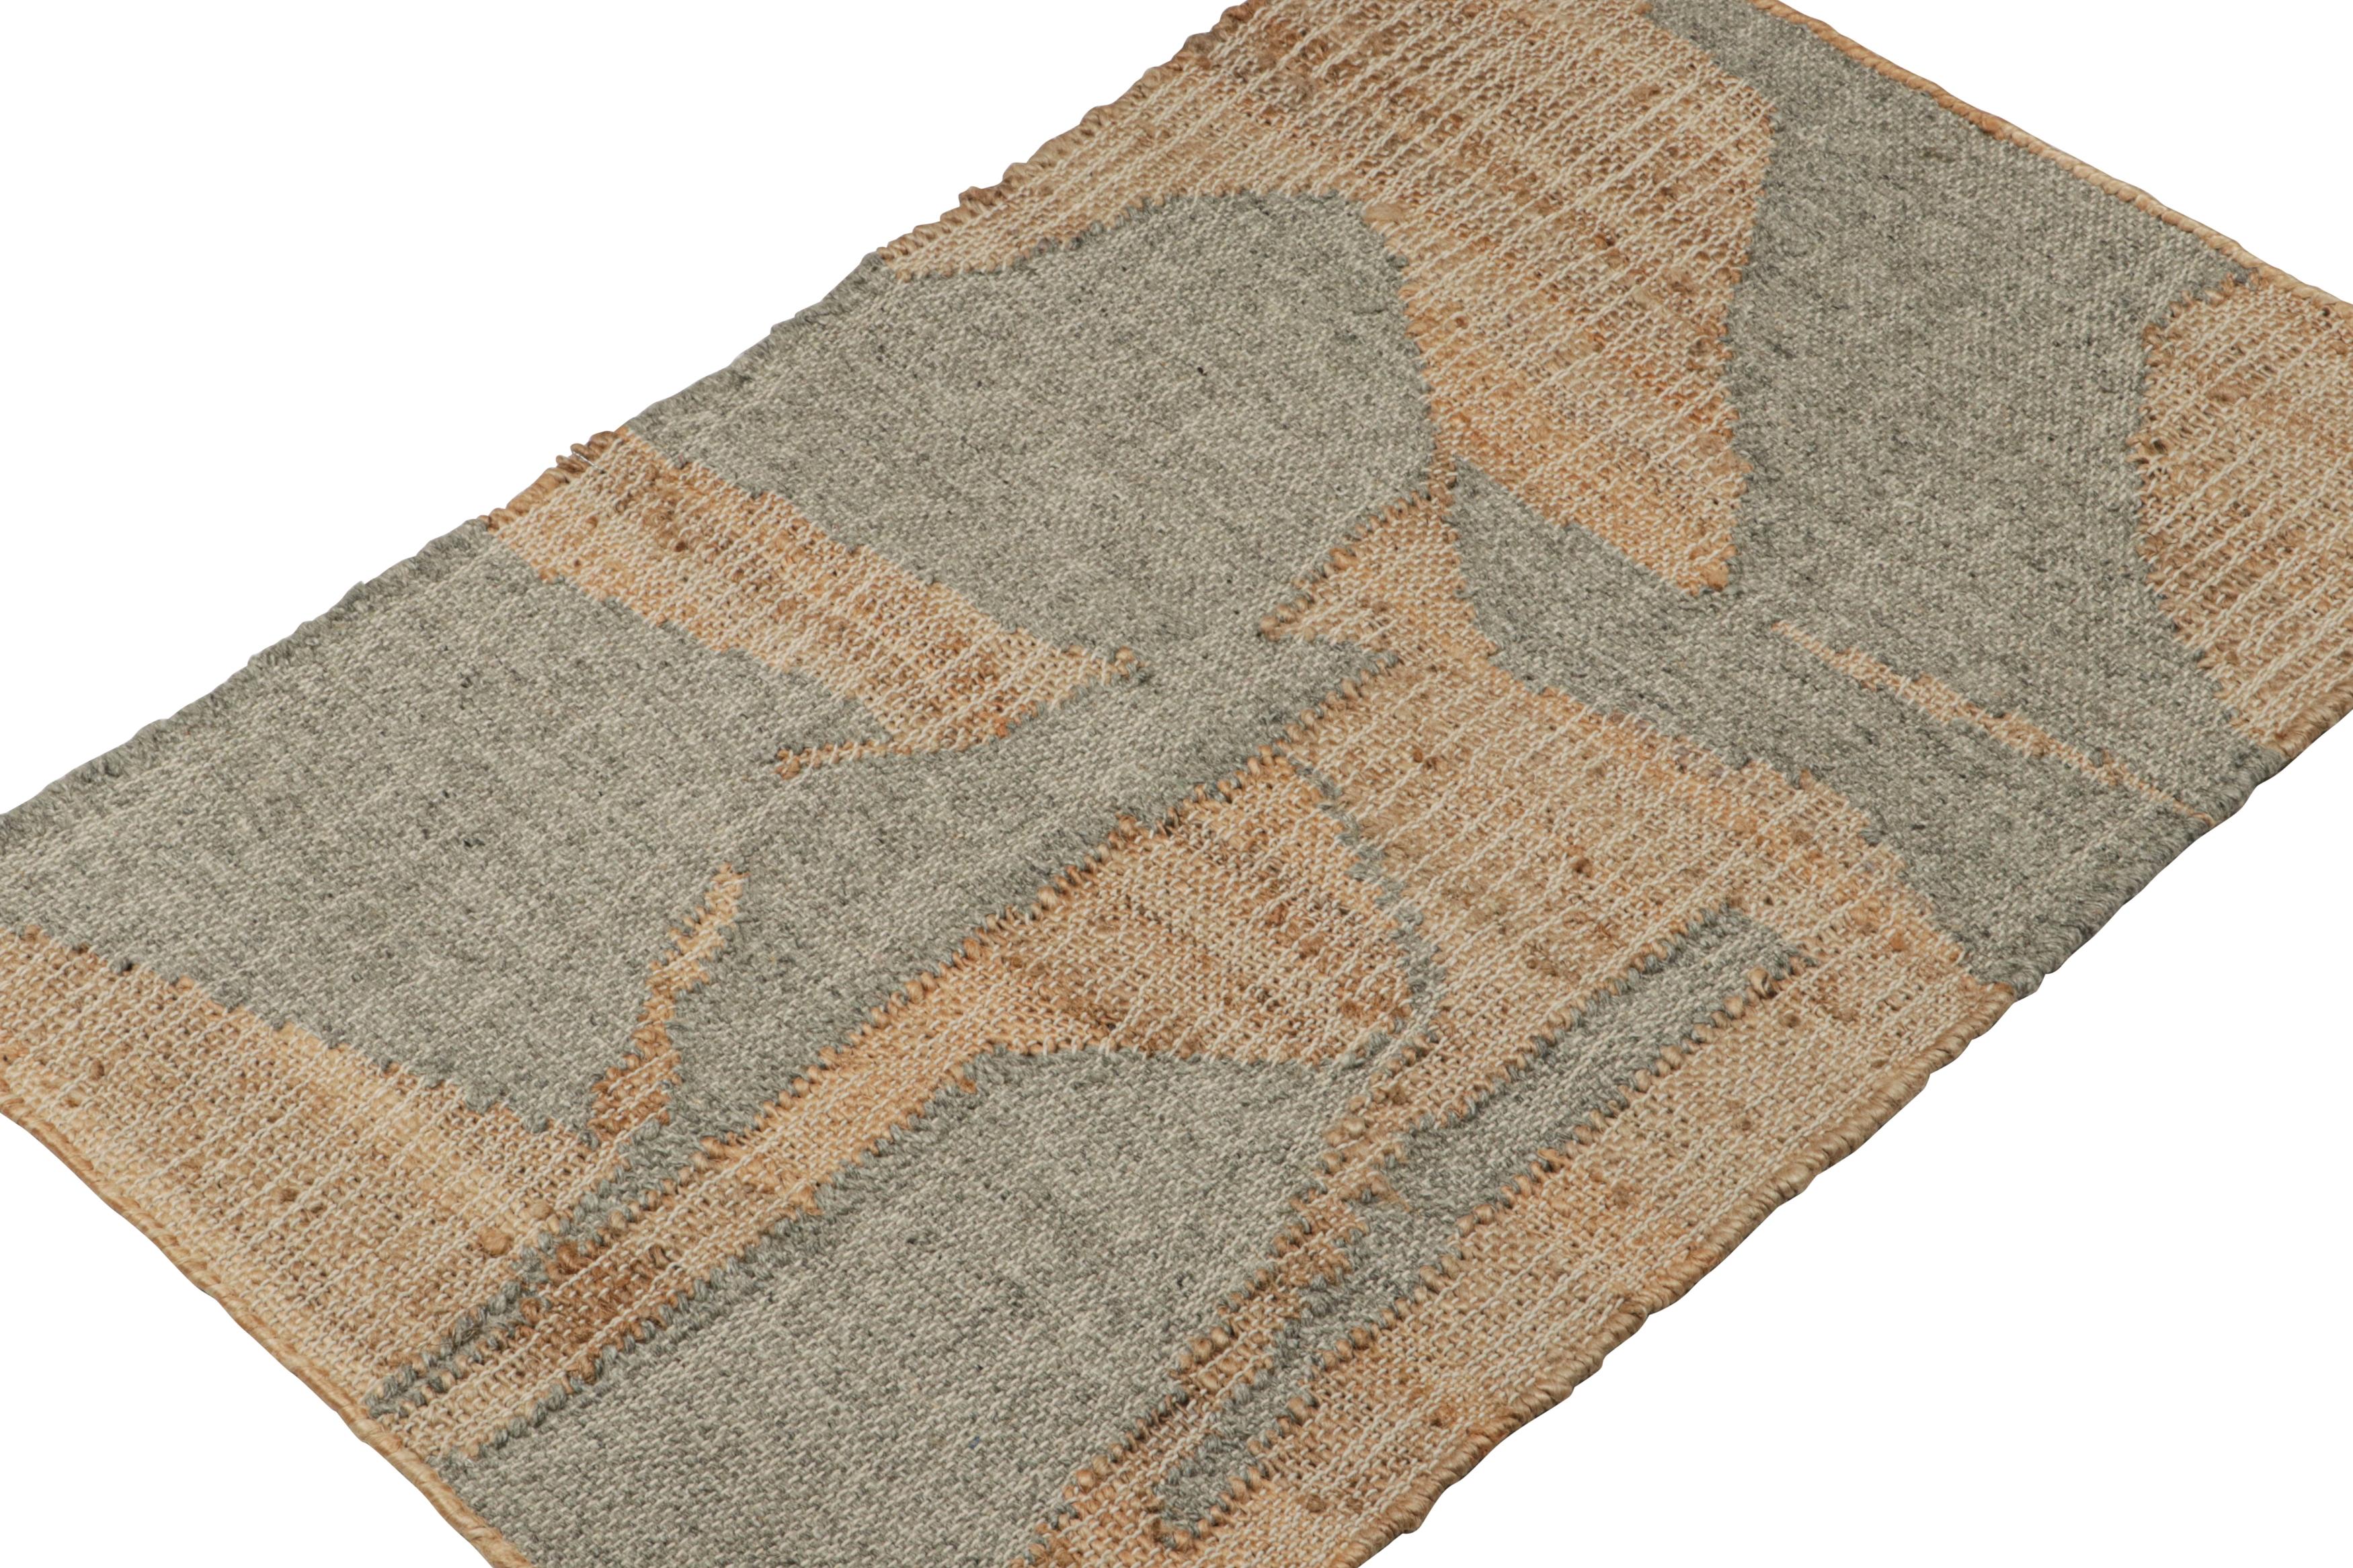 Ce tapis 2x3 est un nouvel ajout audacieux à la collection flatweave de Rug & Kilim.
  
Sur le Design : 

Tissé à la main en jute, laine et coton, ce kilim contemporain présente des motifs géométriques dans les tons marron et gris. De plus, il